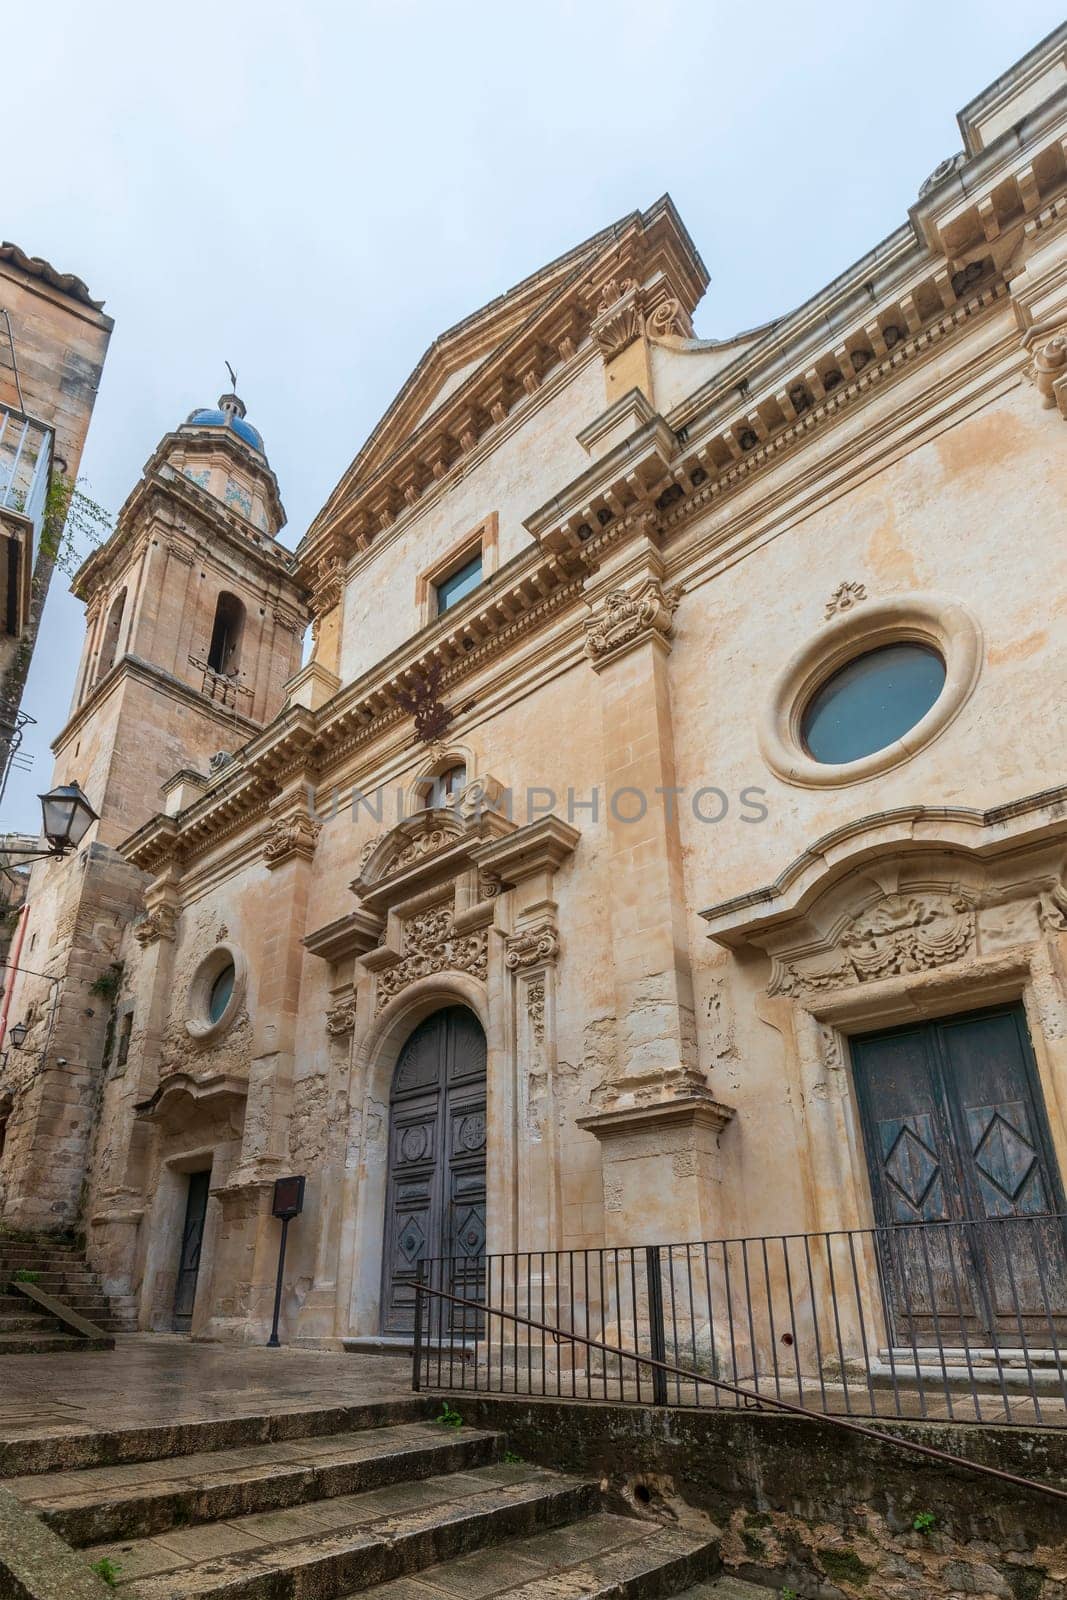 Church Santa Maria dell'Itria a Ragusa ibla, Sicily, Italy